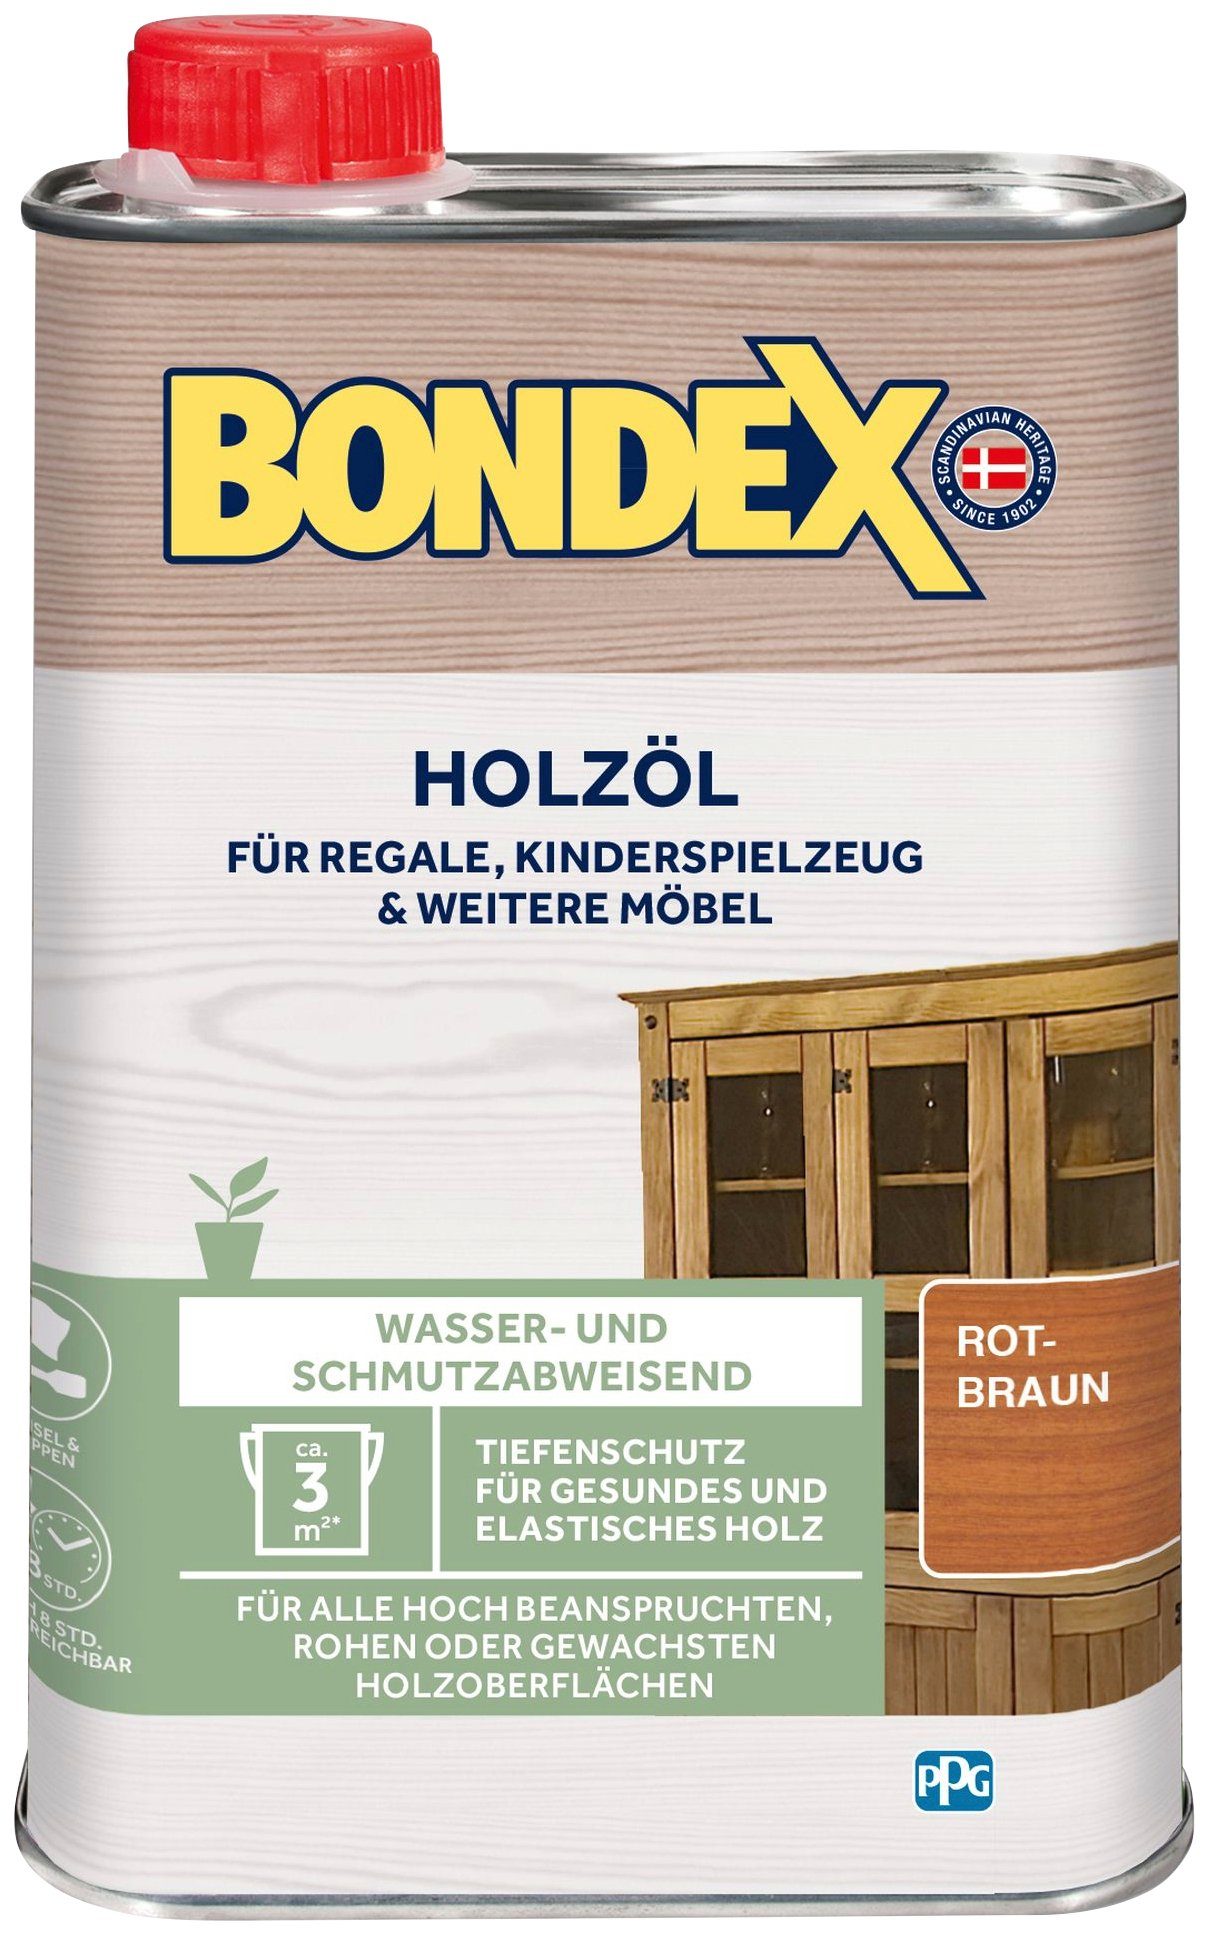 Bondex Holzöl HOLZÖL, Farblos, 0,25 Liter Inhalt rotbraun